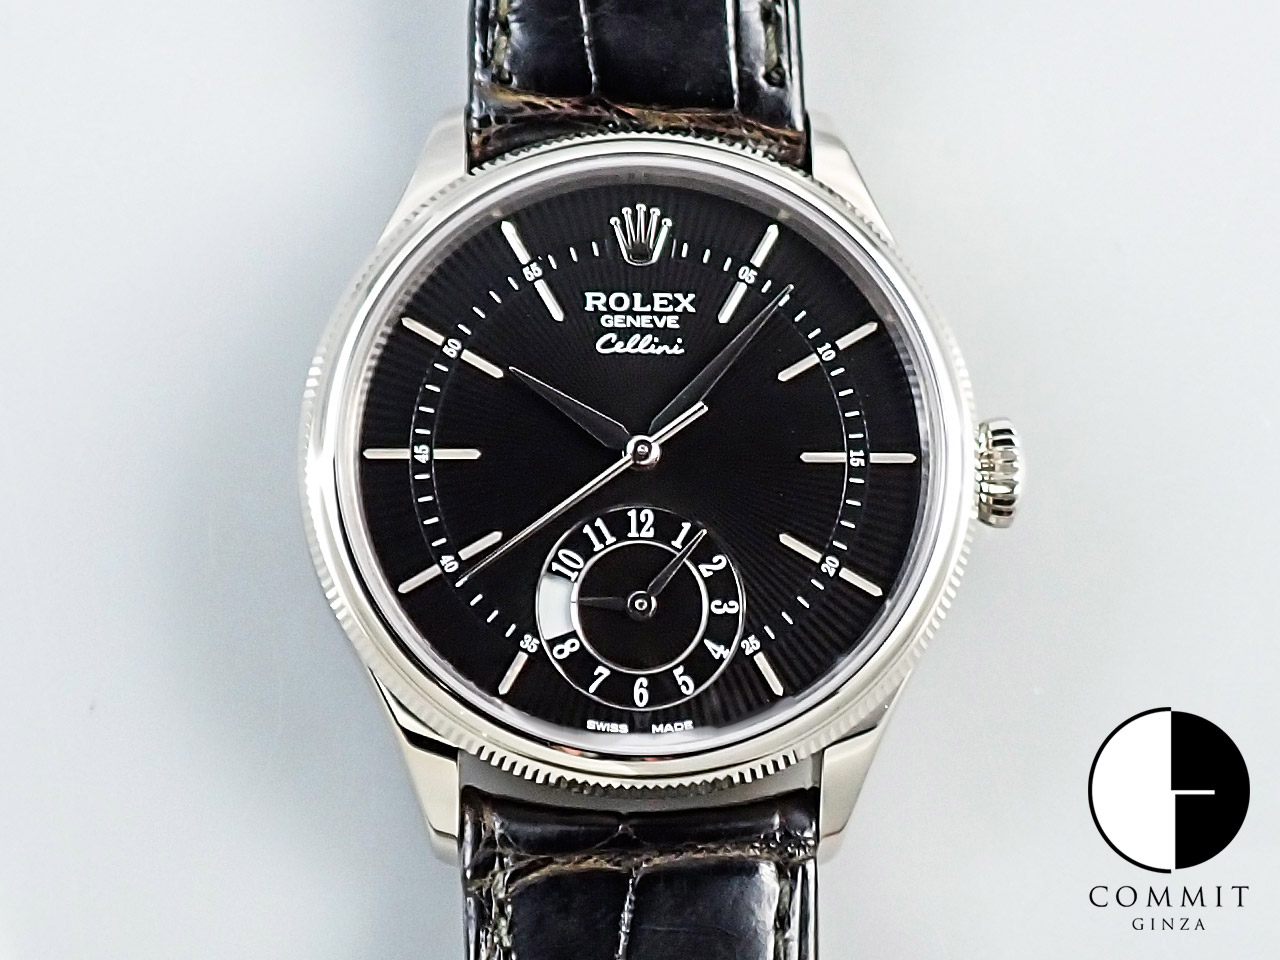 ロレックス(ROLEX) 新品・未使用品・中古品 販売腕時計一覧 | コミット 